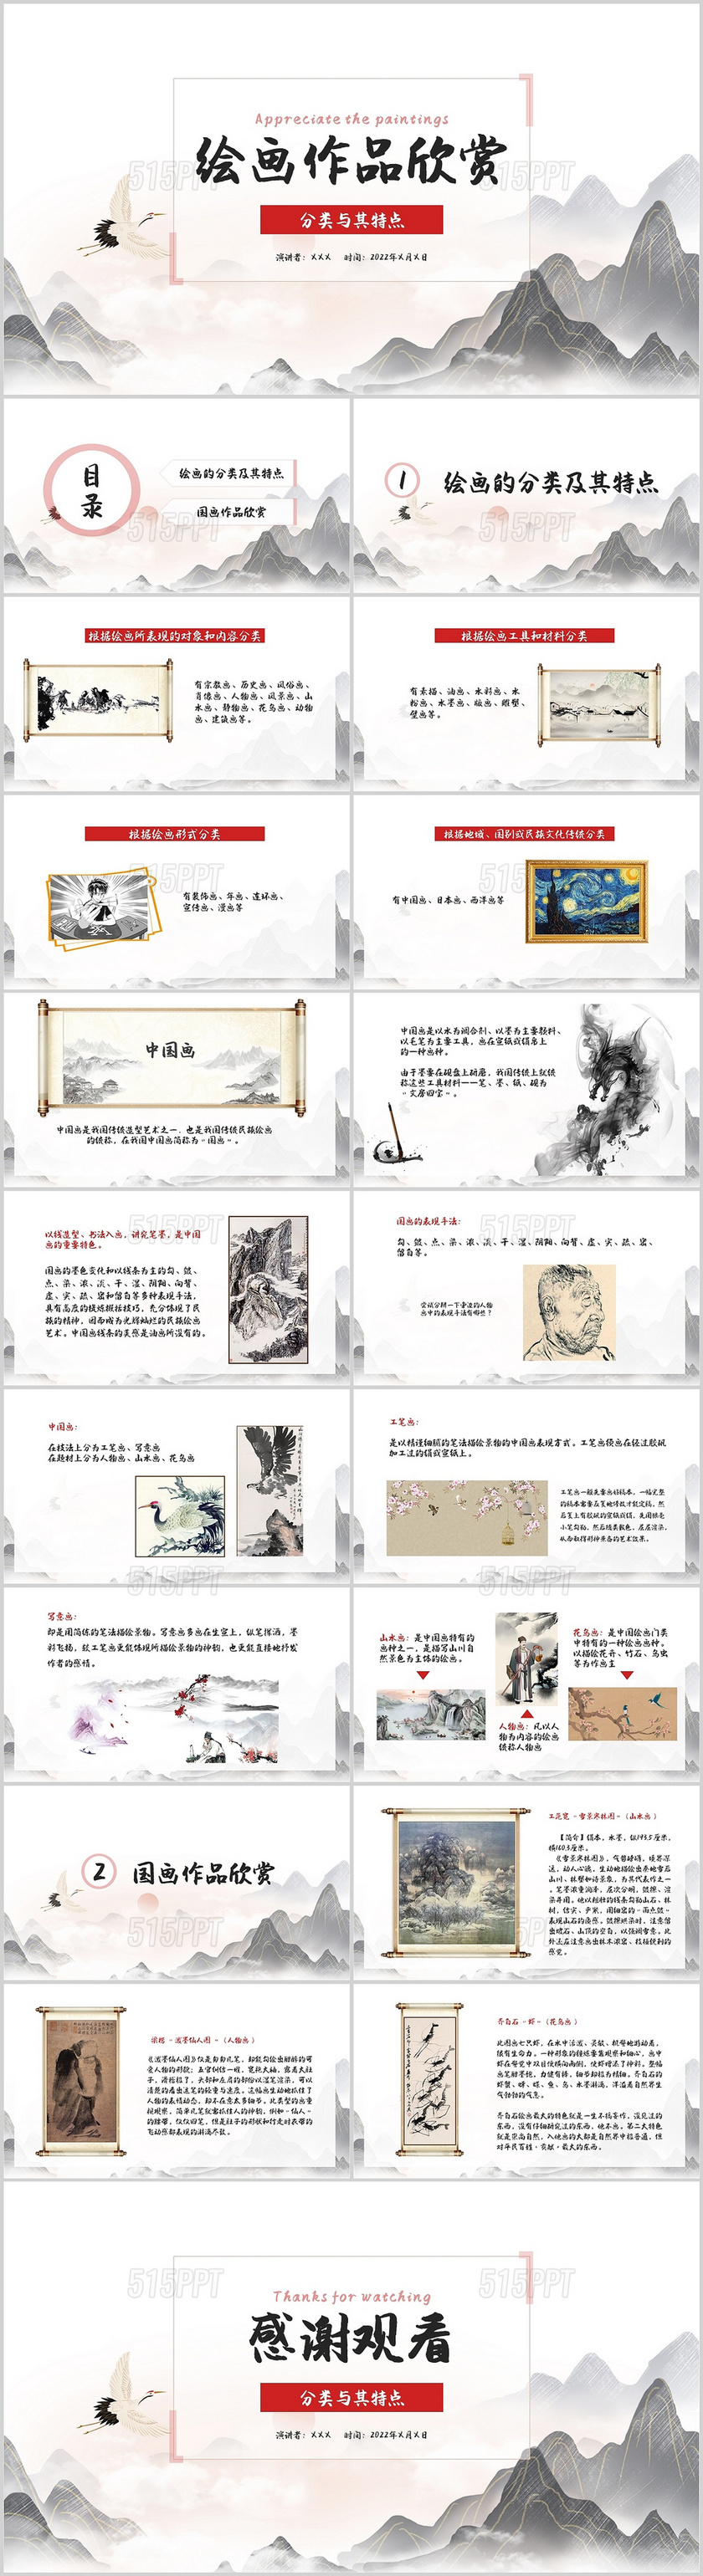 白色中国风绘画作品欣赏分类与其特点说课PPT模板美术作品的分类及各自的特点